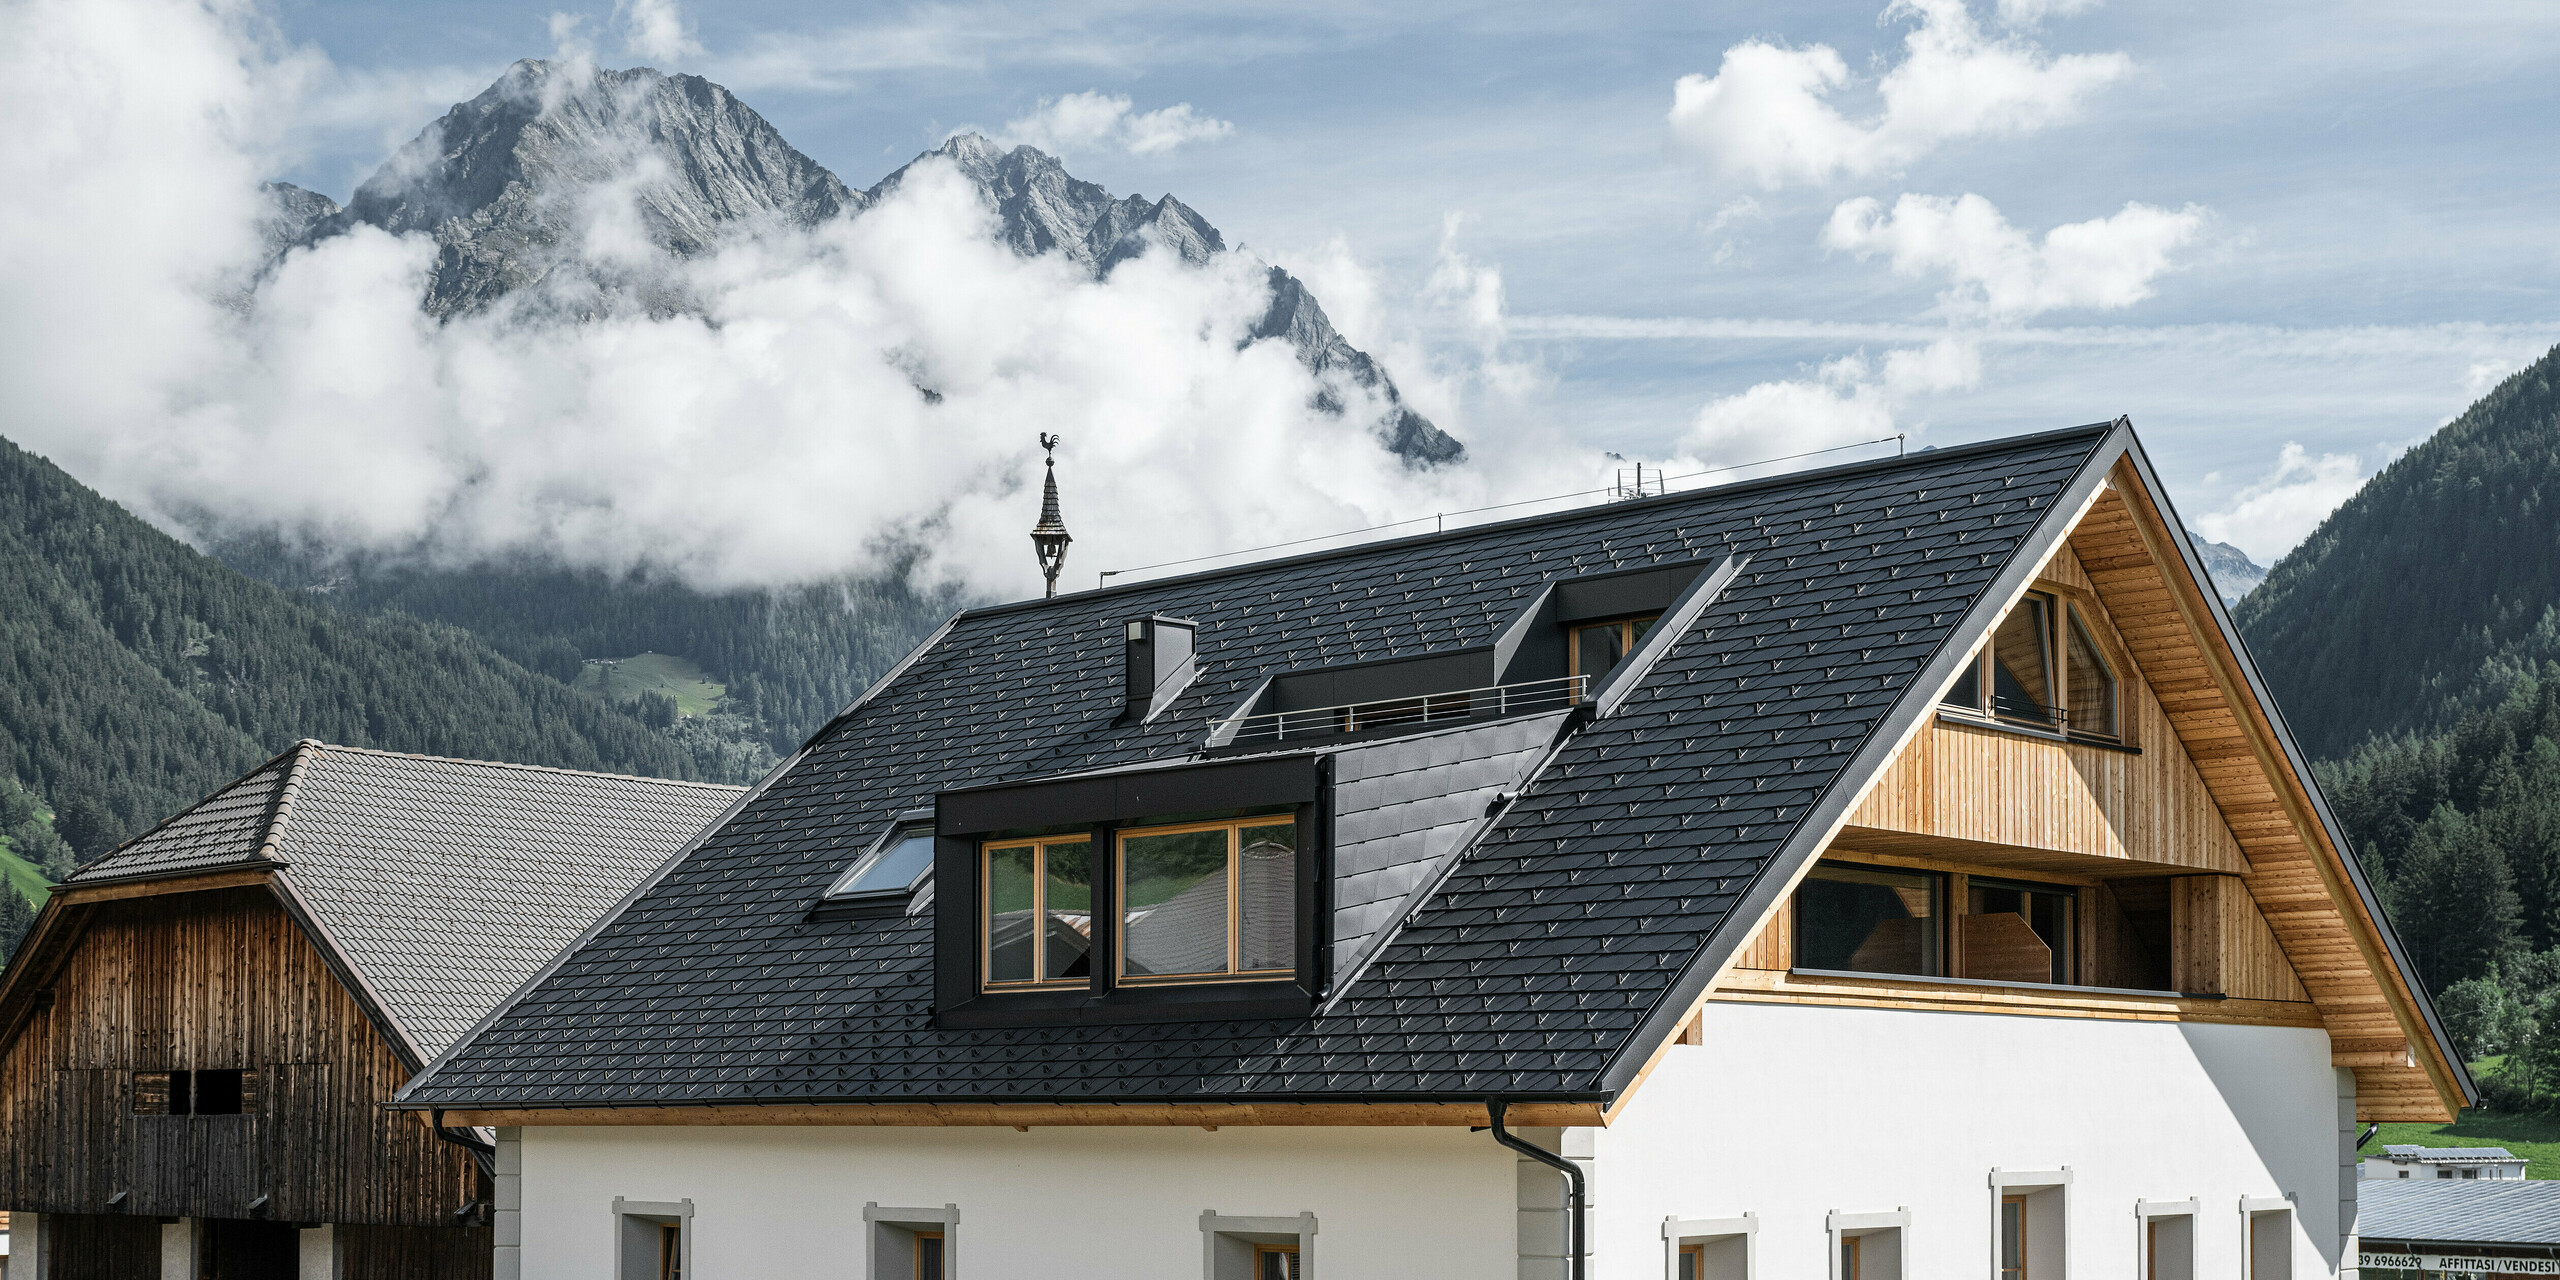 Detailansicht des wind- und wetterfesten PREFA Dachsystems. Das Satteldach des Außerwegerhofs in Südtirol wurde mit robusten PREAF DS.19 Dachschindeln in P.10 anthrazit eingedeckt. Die ästhetische Dachgestaltung ist umgeben von der beeindruckenden Bergkulisse des Antholzertals.